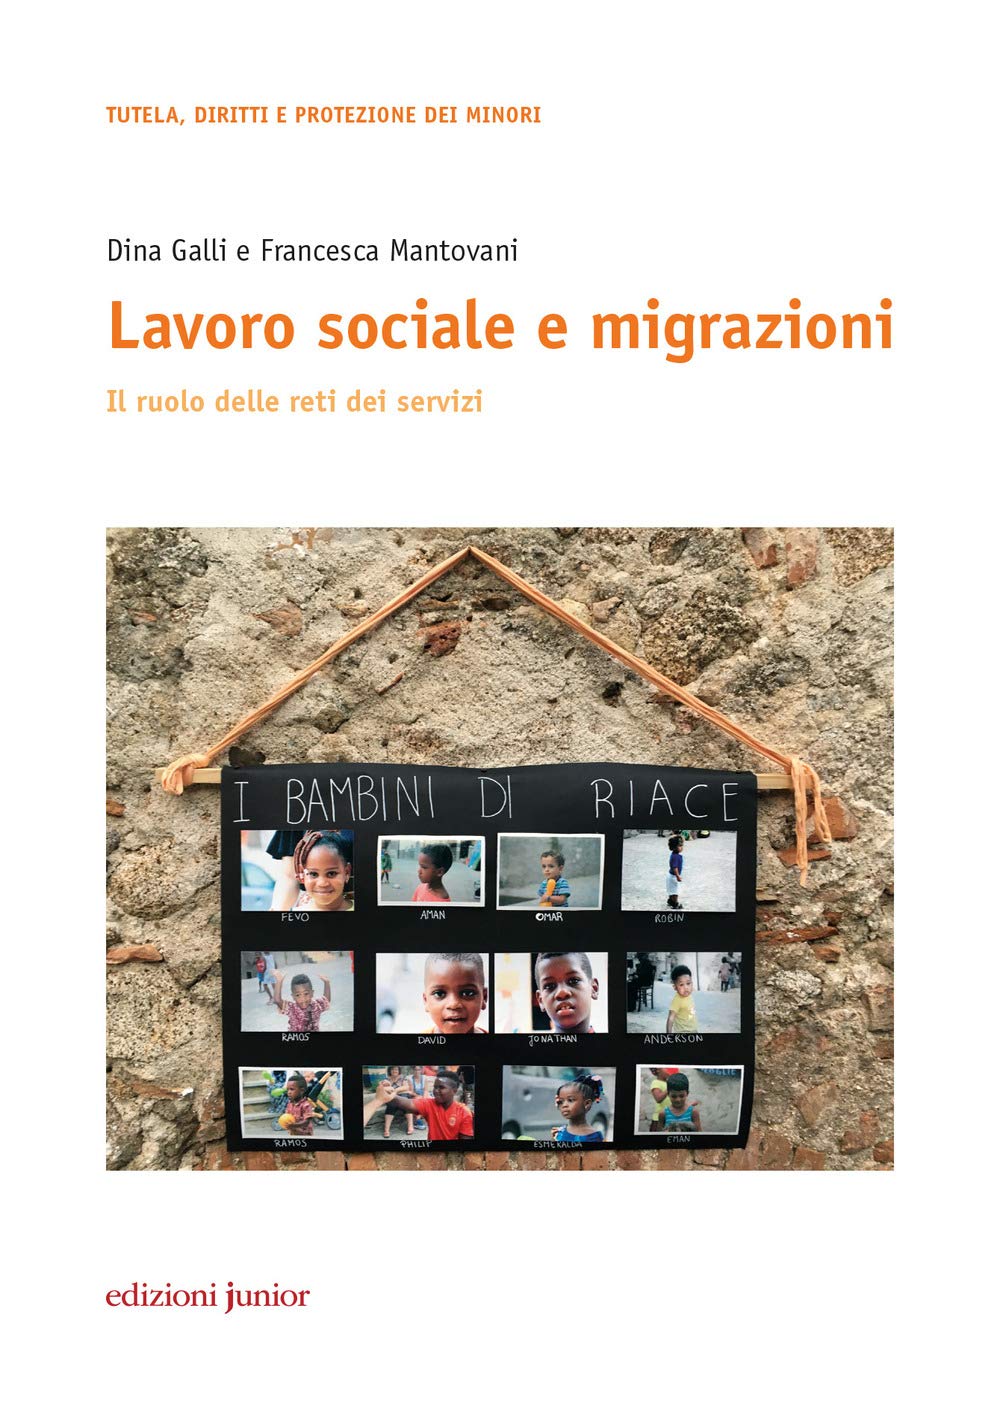 Galli D., Mantovani F. (2019). Lavoro sociale e migrazioni. Il ruolo delle reti dei servizi. Junior